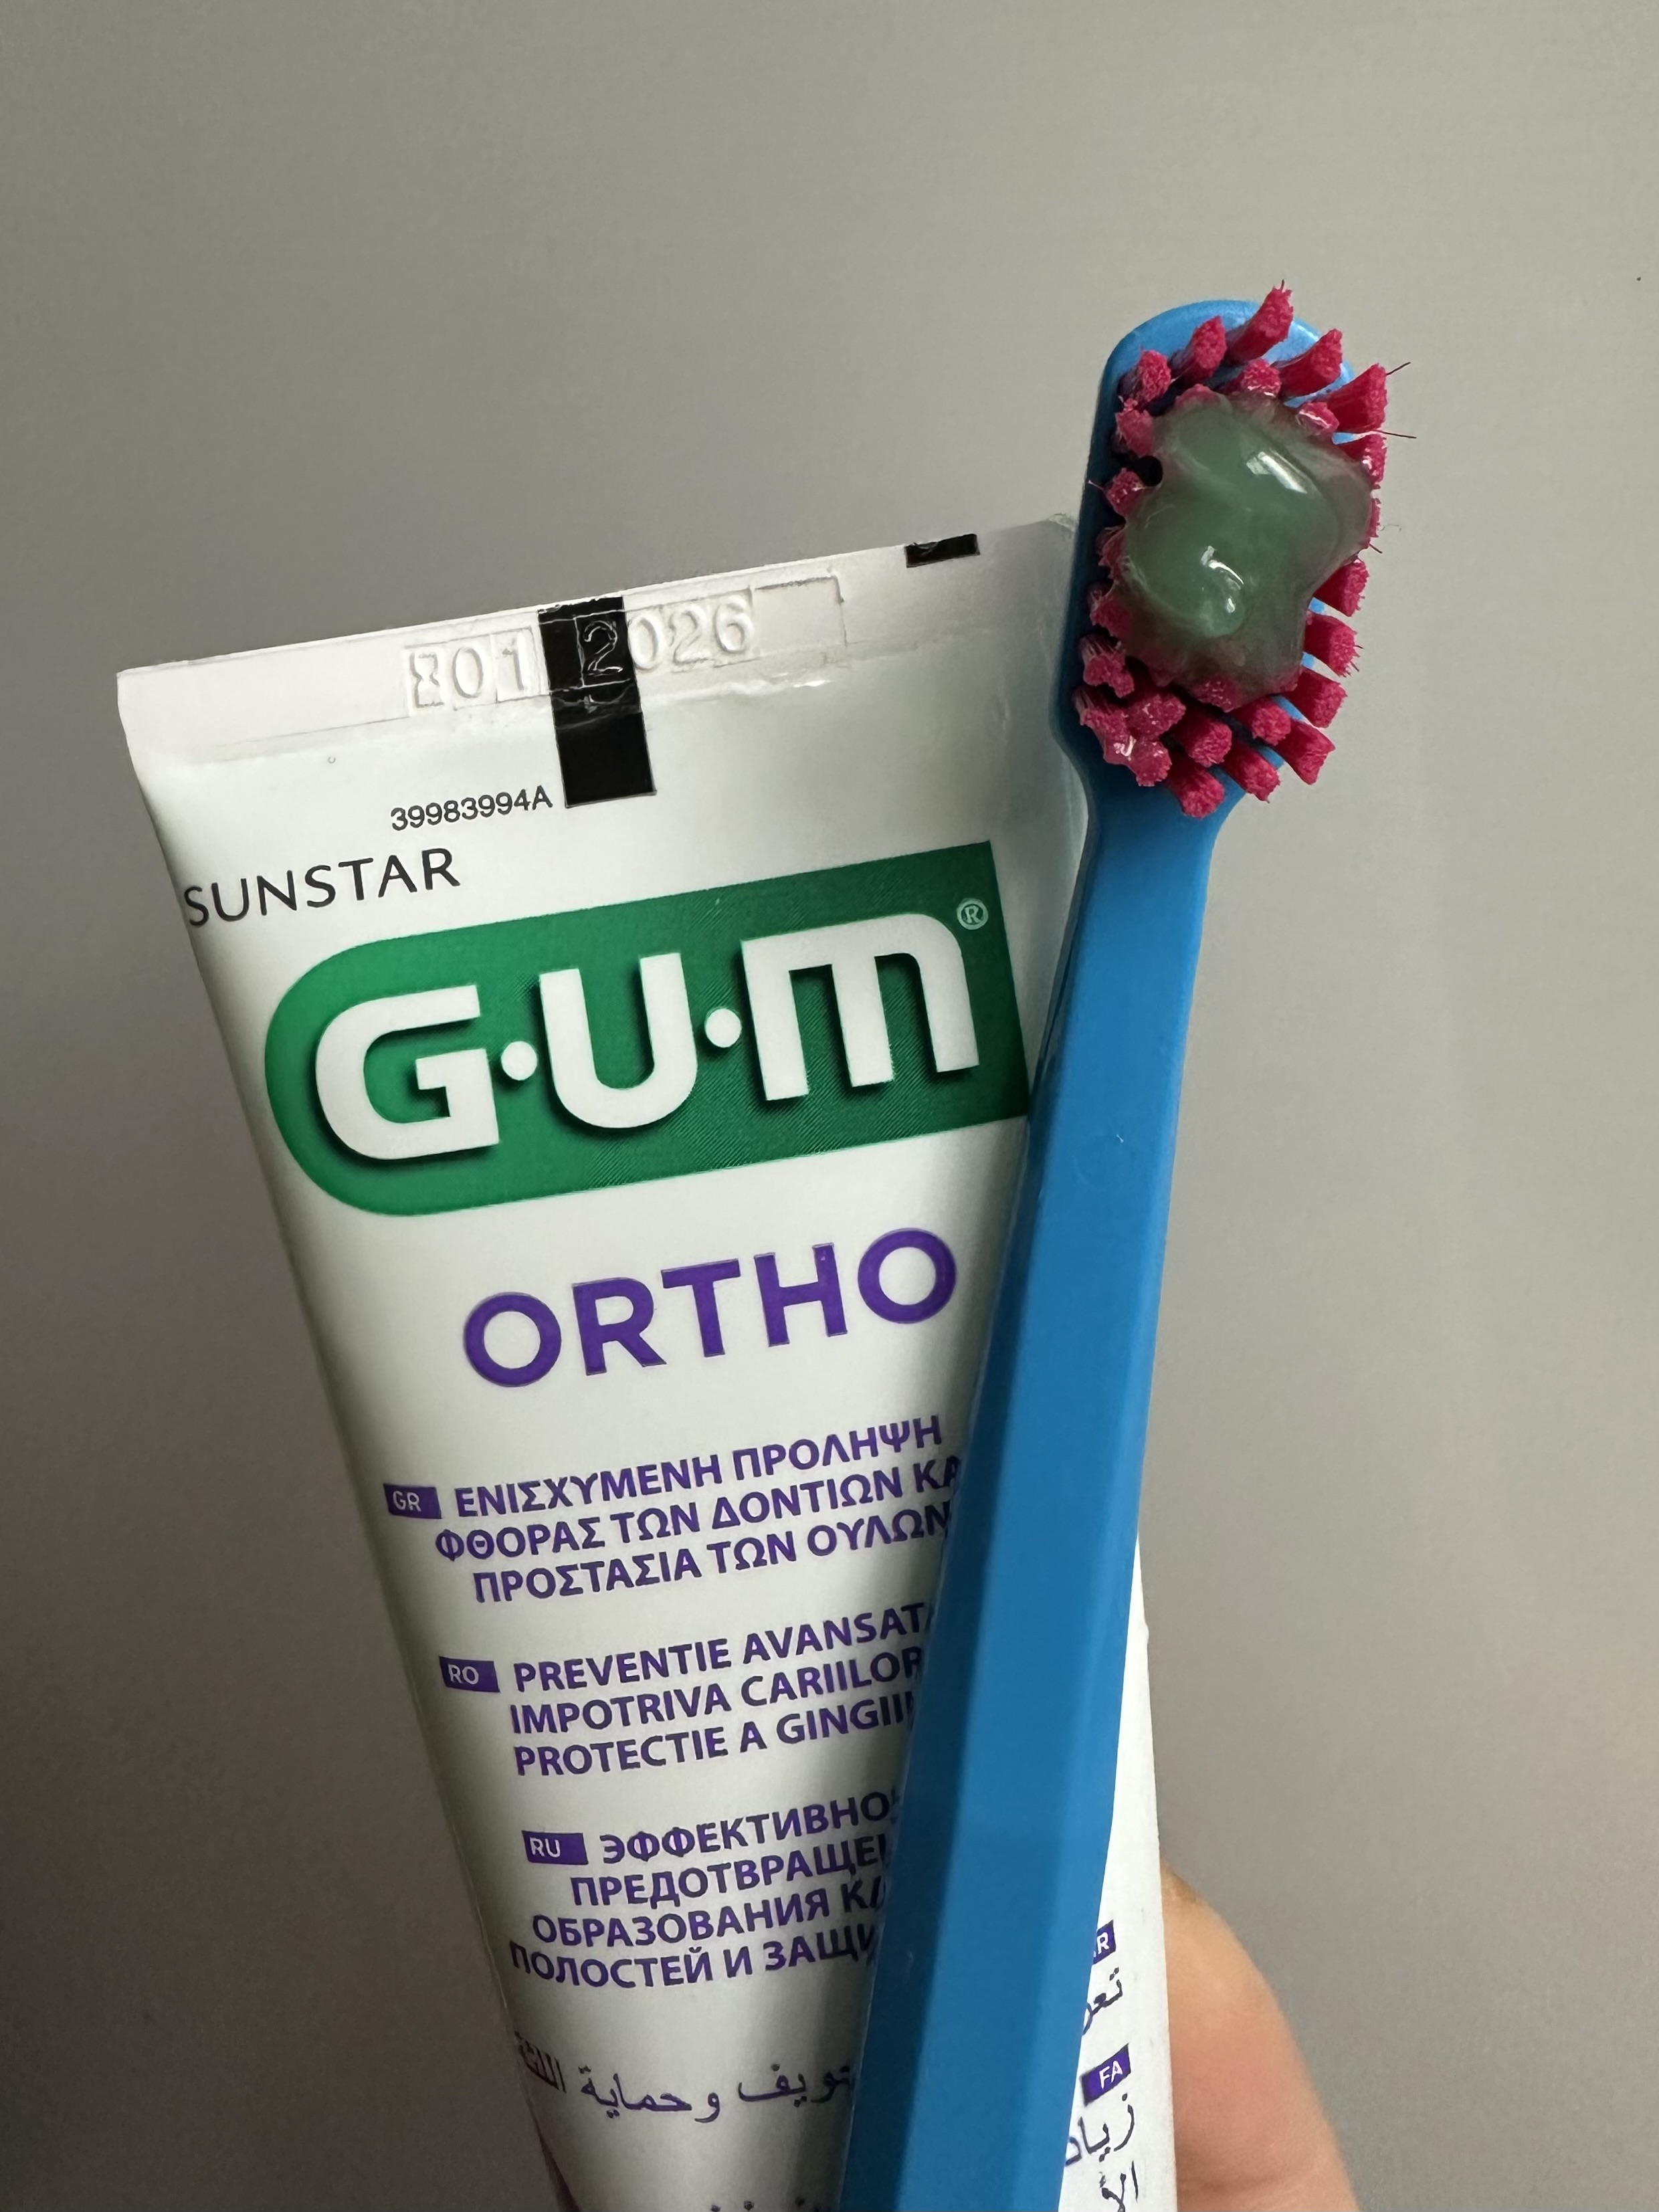 Зубної пасти G.U.M Ortho вистачить дійсно горошину